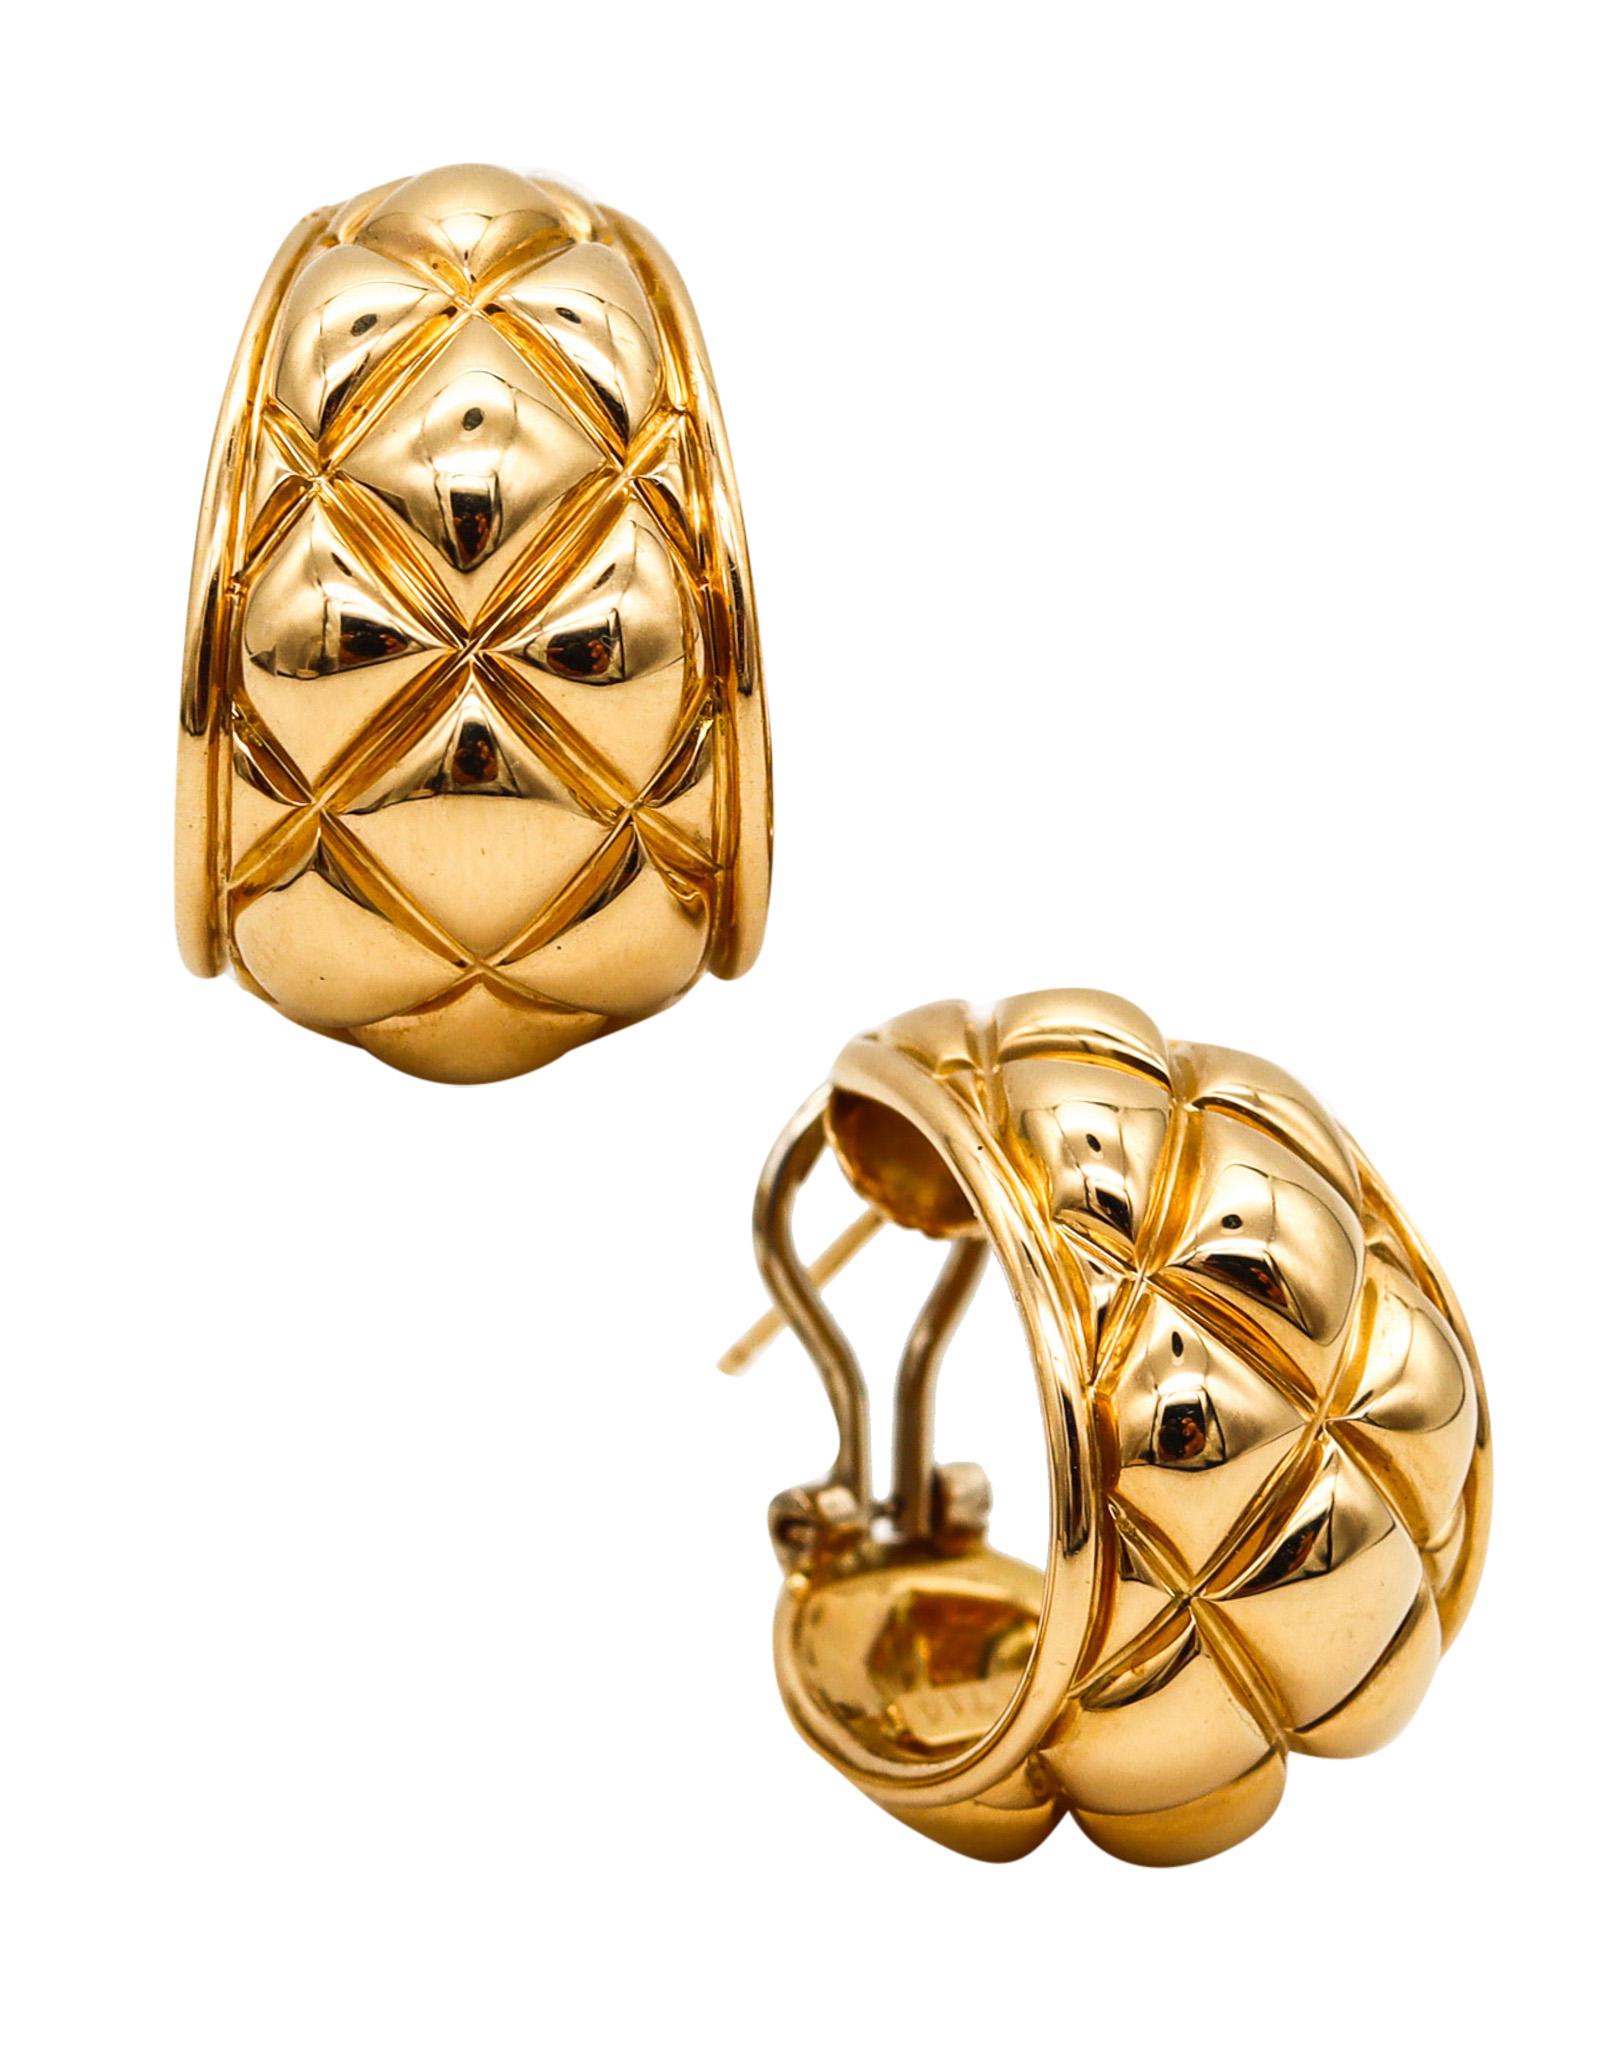 Gesteppte Ohrringe mit Reifen von Chaumet.

Ein Vintage-Ohrringpaar, das in den 1970er Jahren vom Schmuckhaus Chaumet in Paris hergestellt wurde. Diese Ohrringe wurden als linkes und rechtes Paar mit geometrischen Steppmustern aus massivem